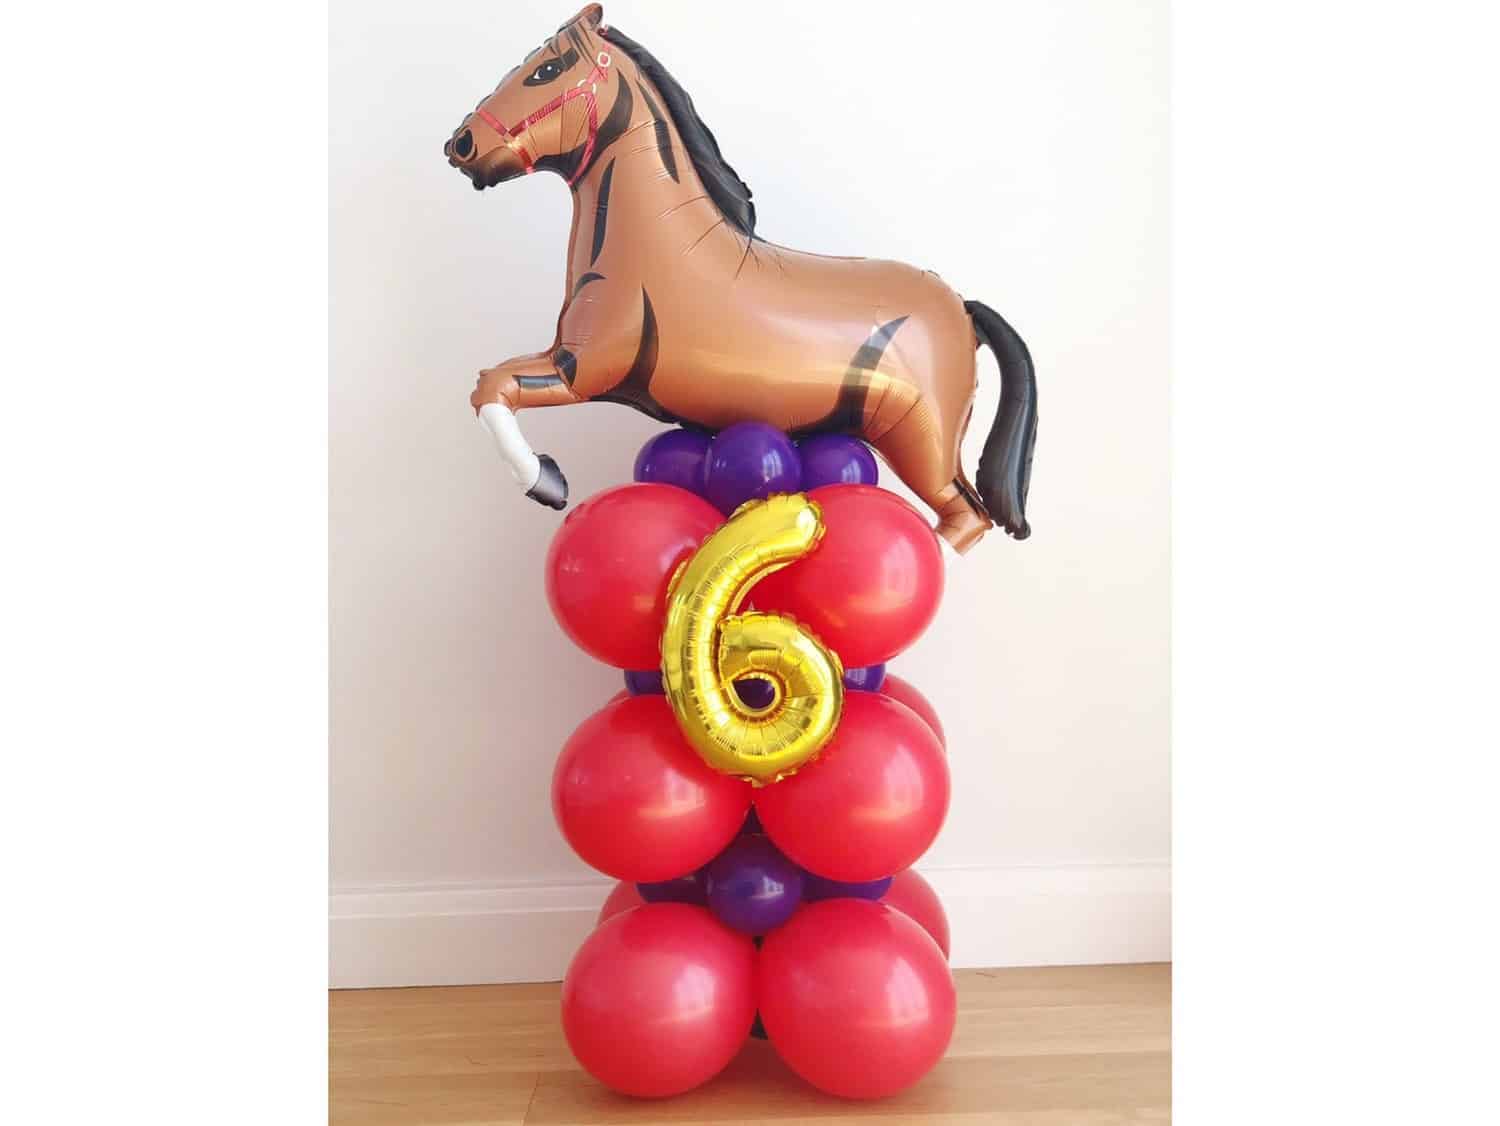 Horse Balloon Sculptures